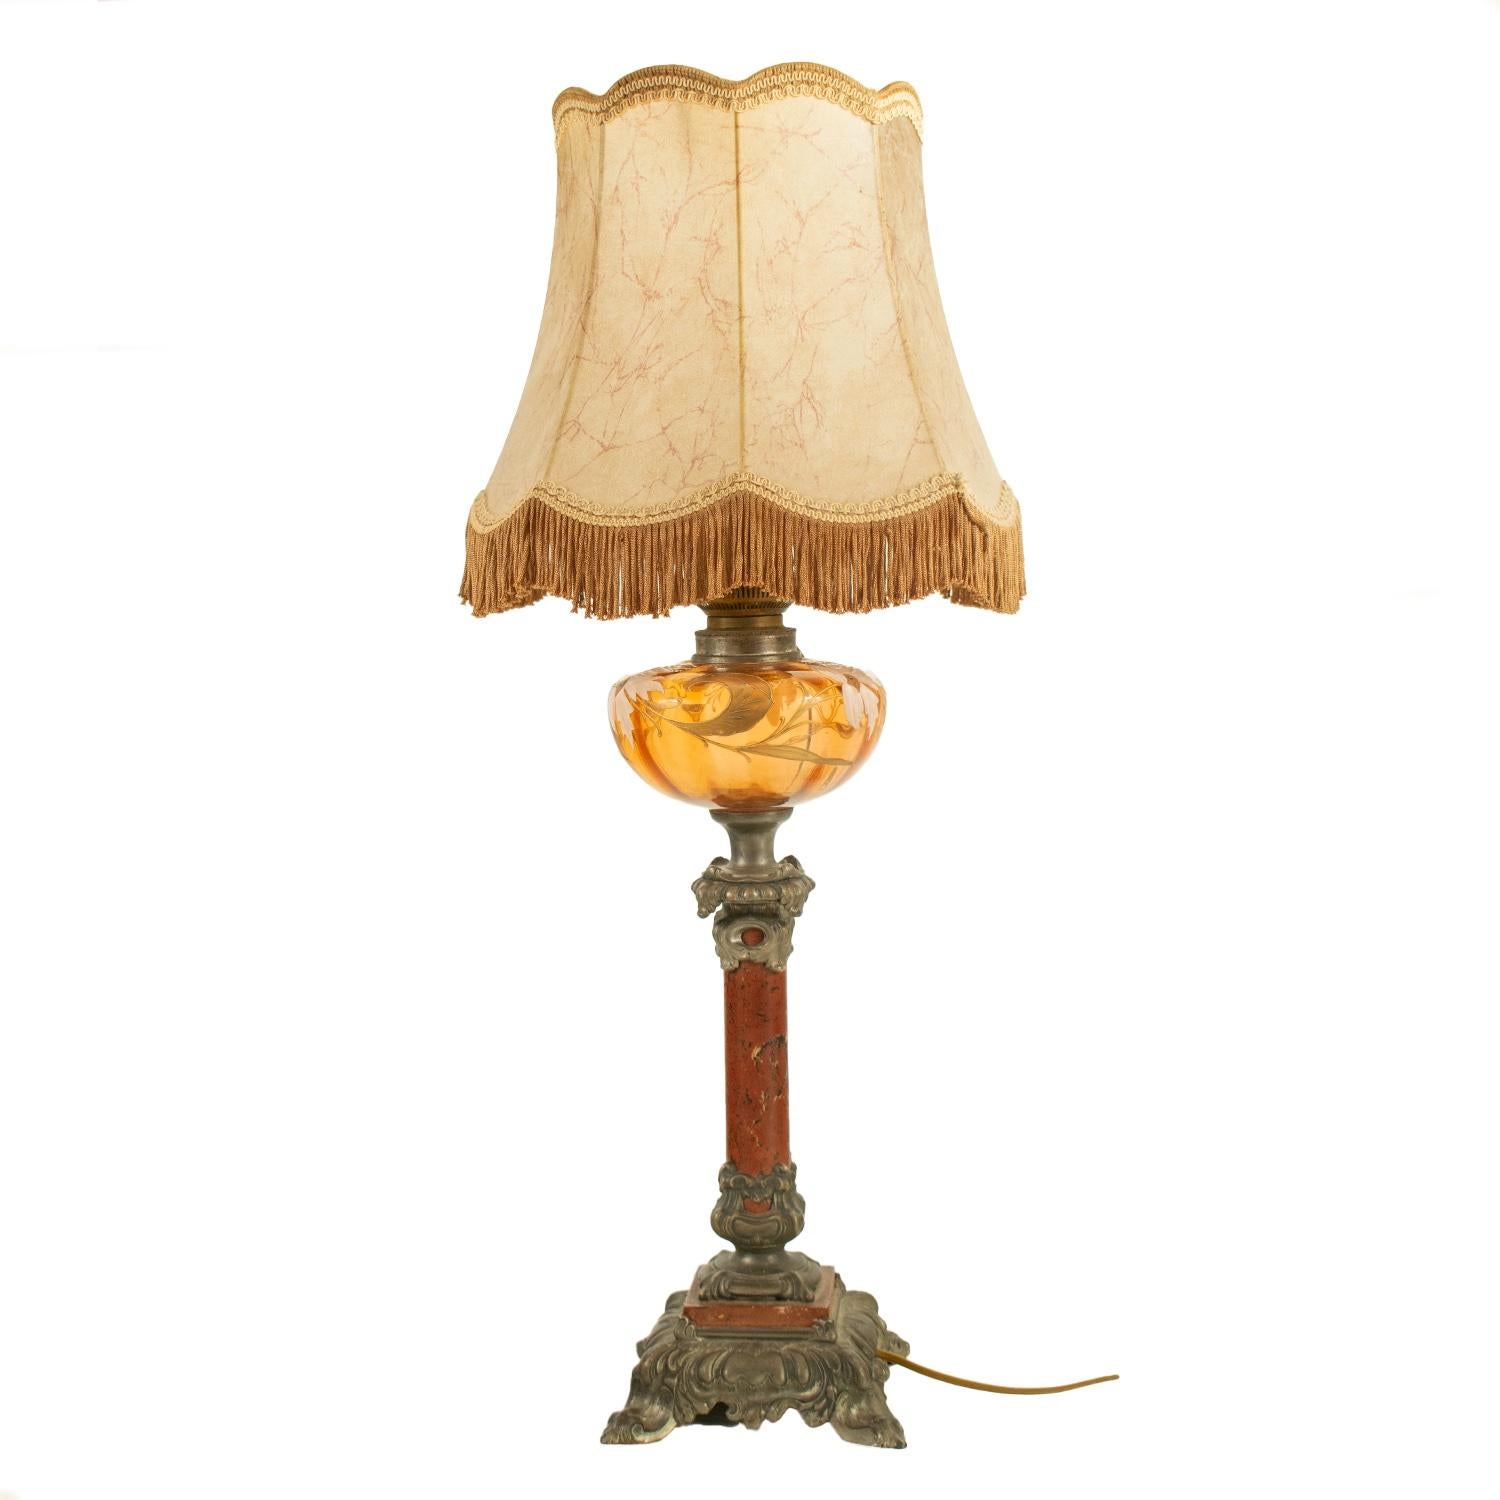 Große traditionelle französische Jugendstillampe, die auf Elektrizität umgestellt wurde, mit originalem Lampenschirm, um 1900.

Mit rotem Marmor- und Zinnsockel und Glasschale mit handgemaltem Blumendekor. 

Die Verkabelung ist in gutem